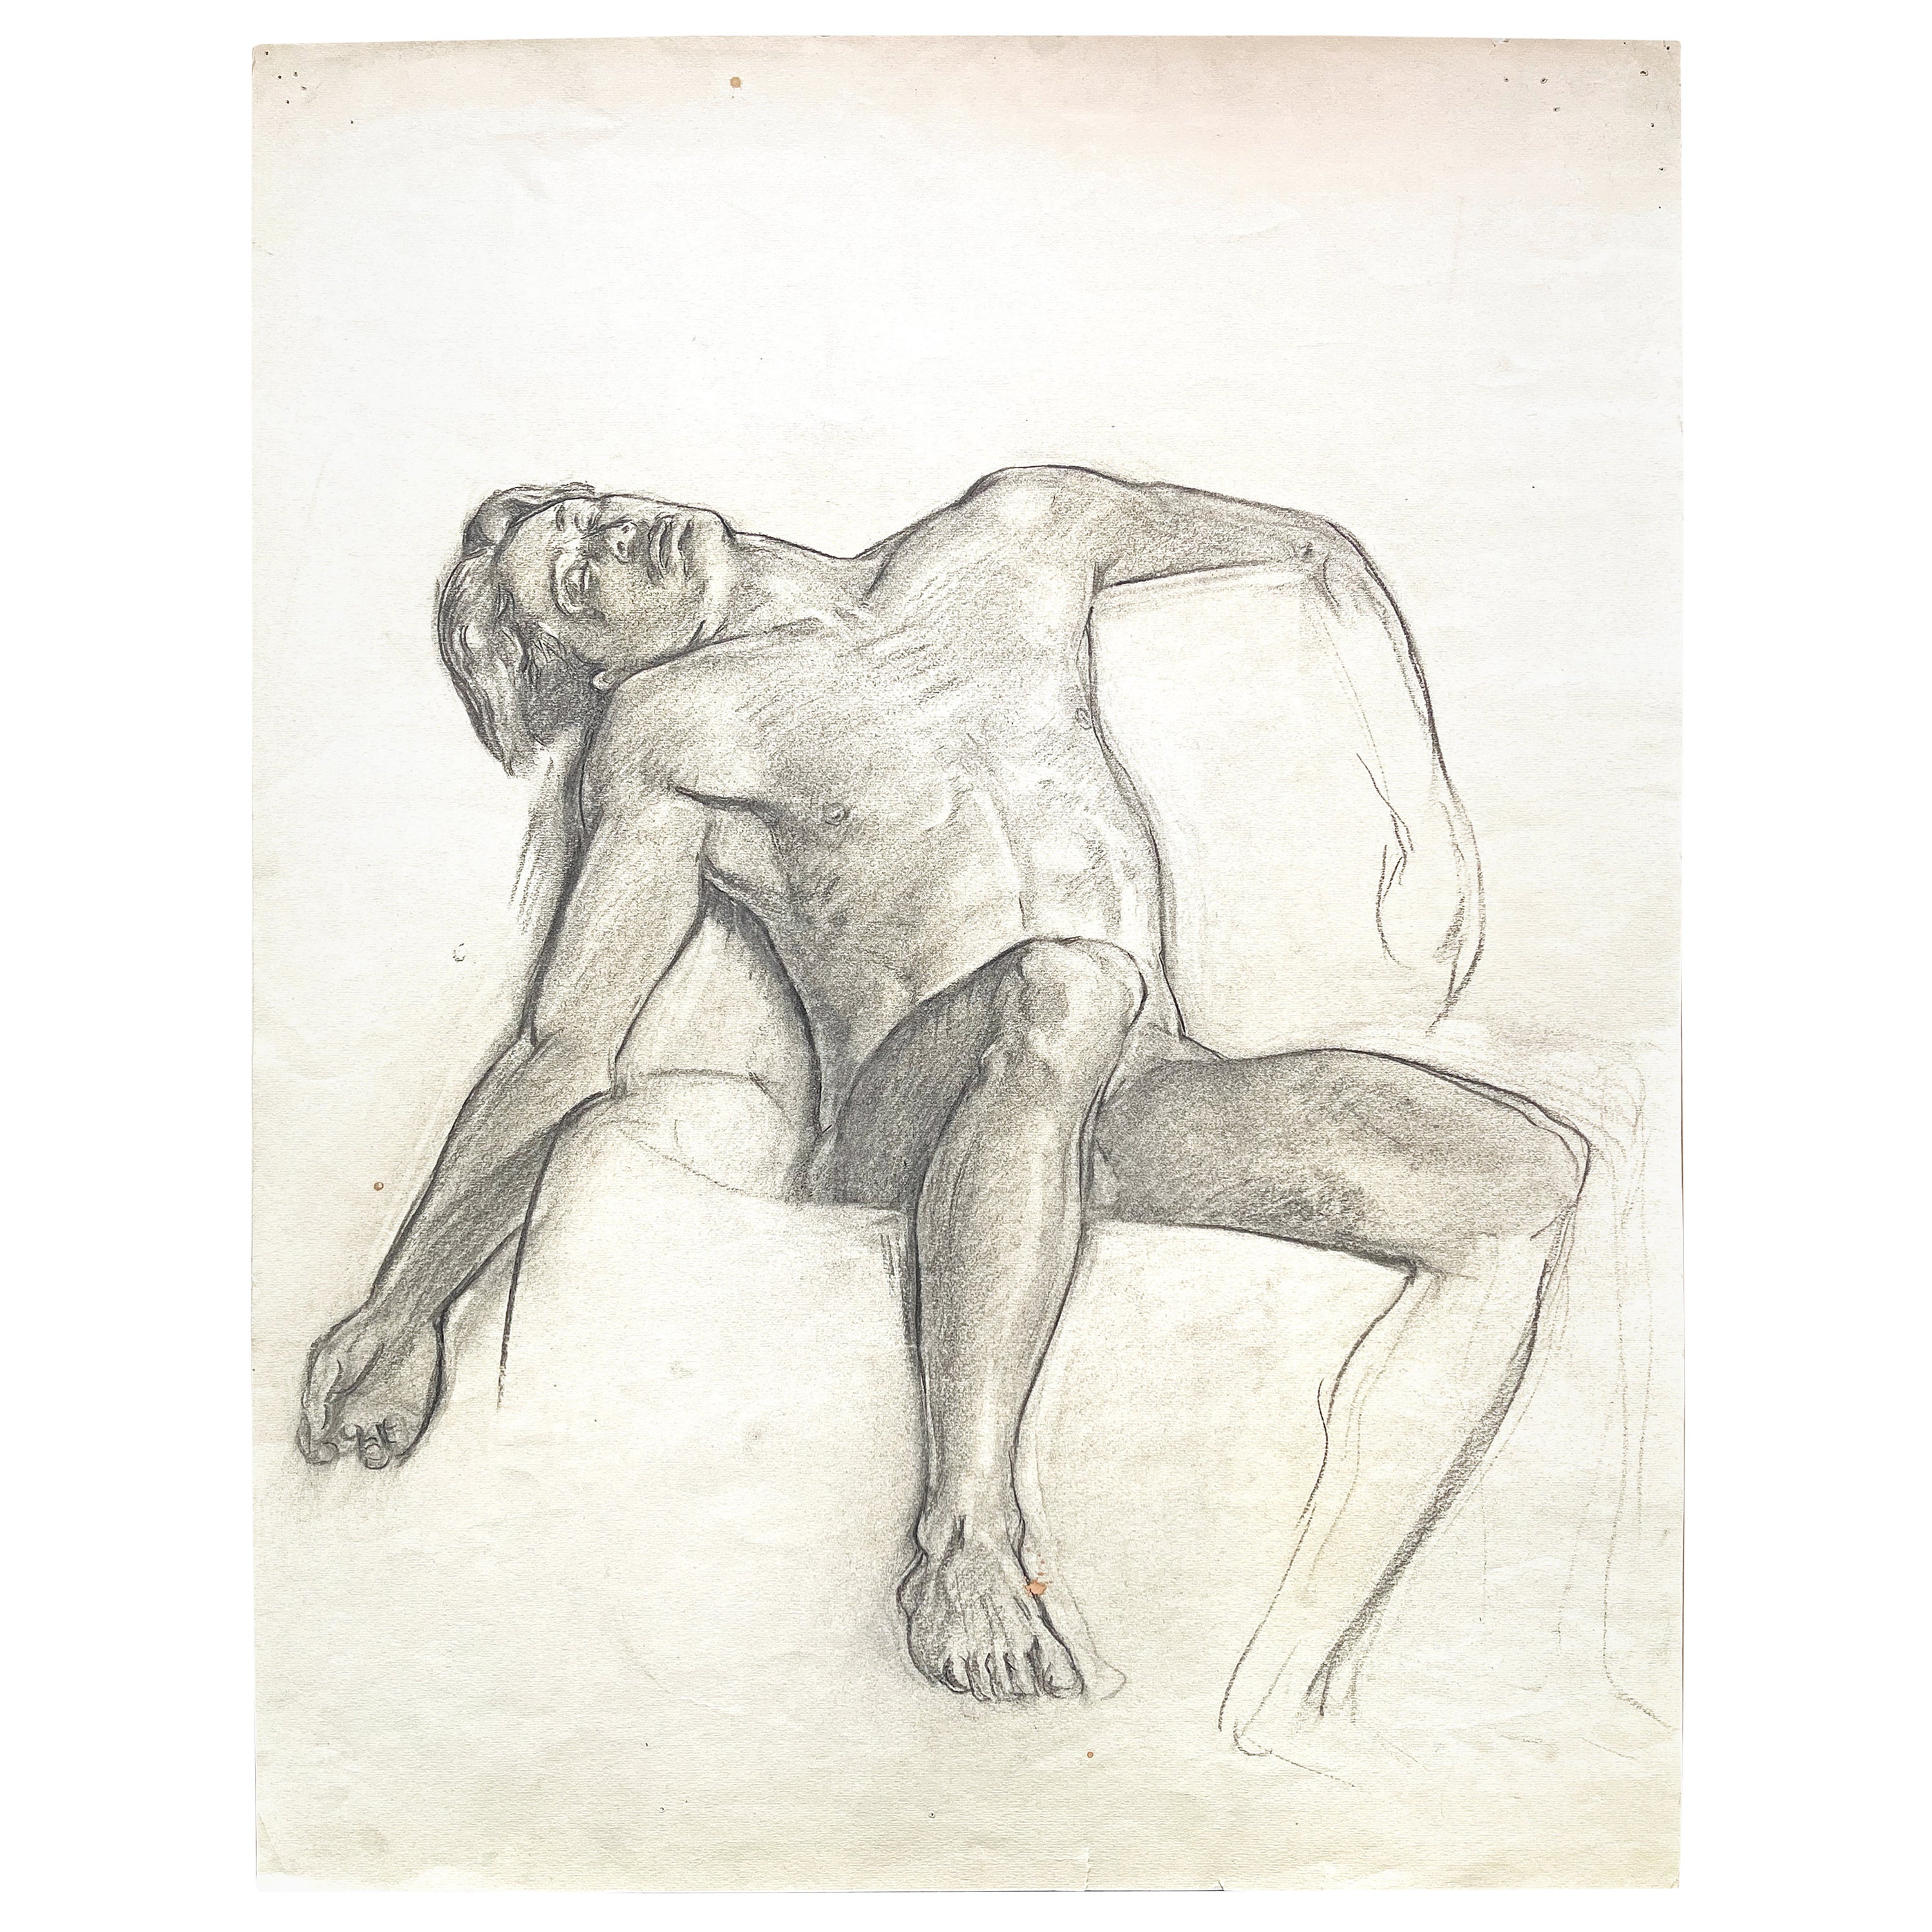 „Sleeping Nude, Arm Akimbo“, meisterhafte Zeichnung von Allyn Cox, Muralist des Kapitols